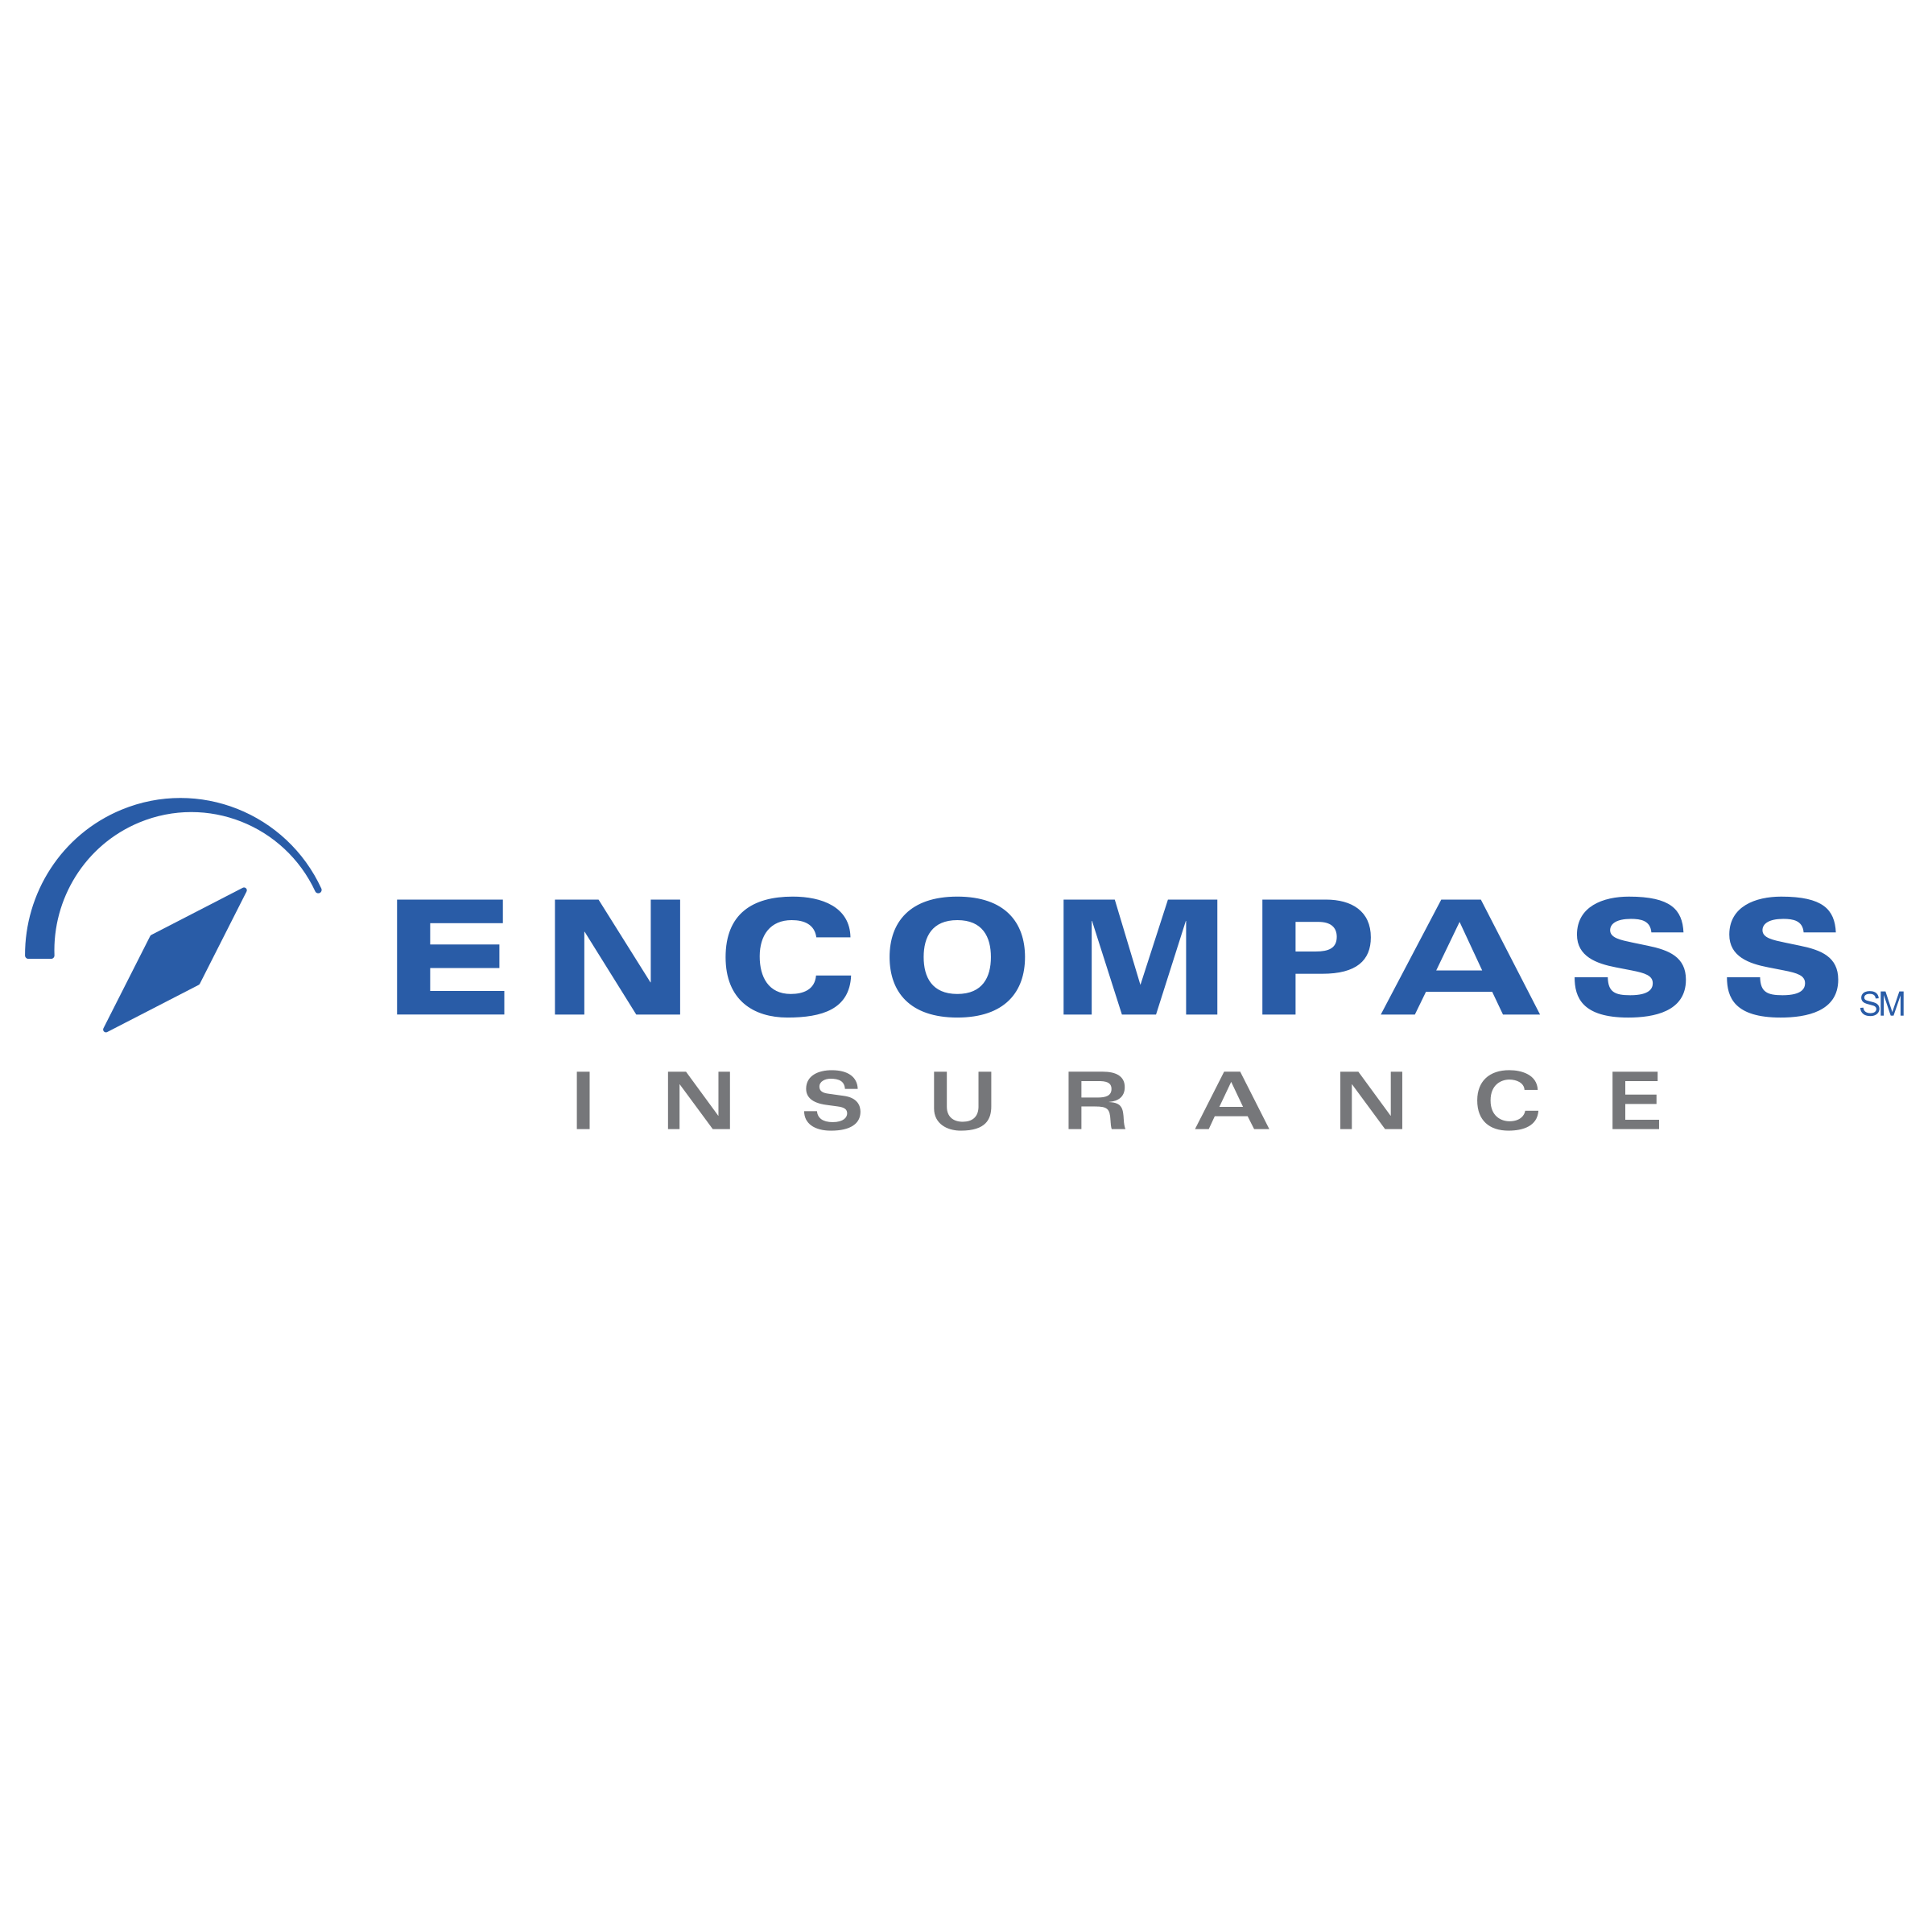 Encompass Logo - Encompass Insurance Logo PNG Transparent & SVG Vector - Freebie Supply